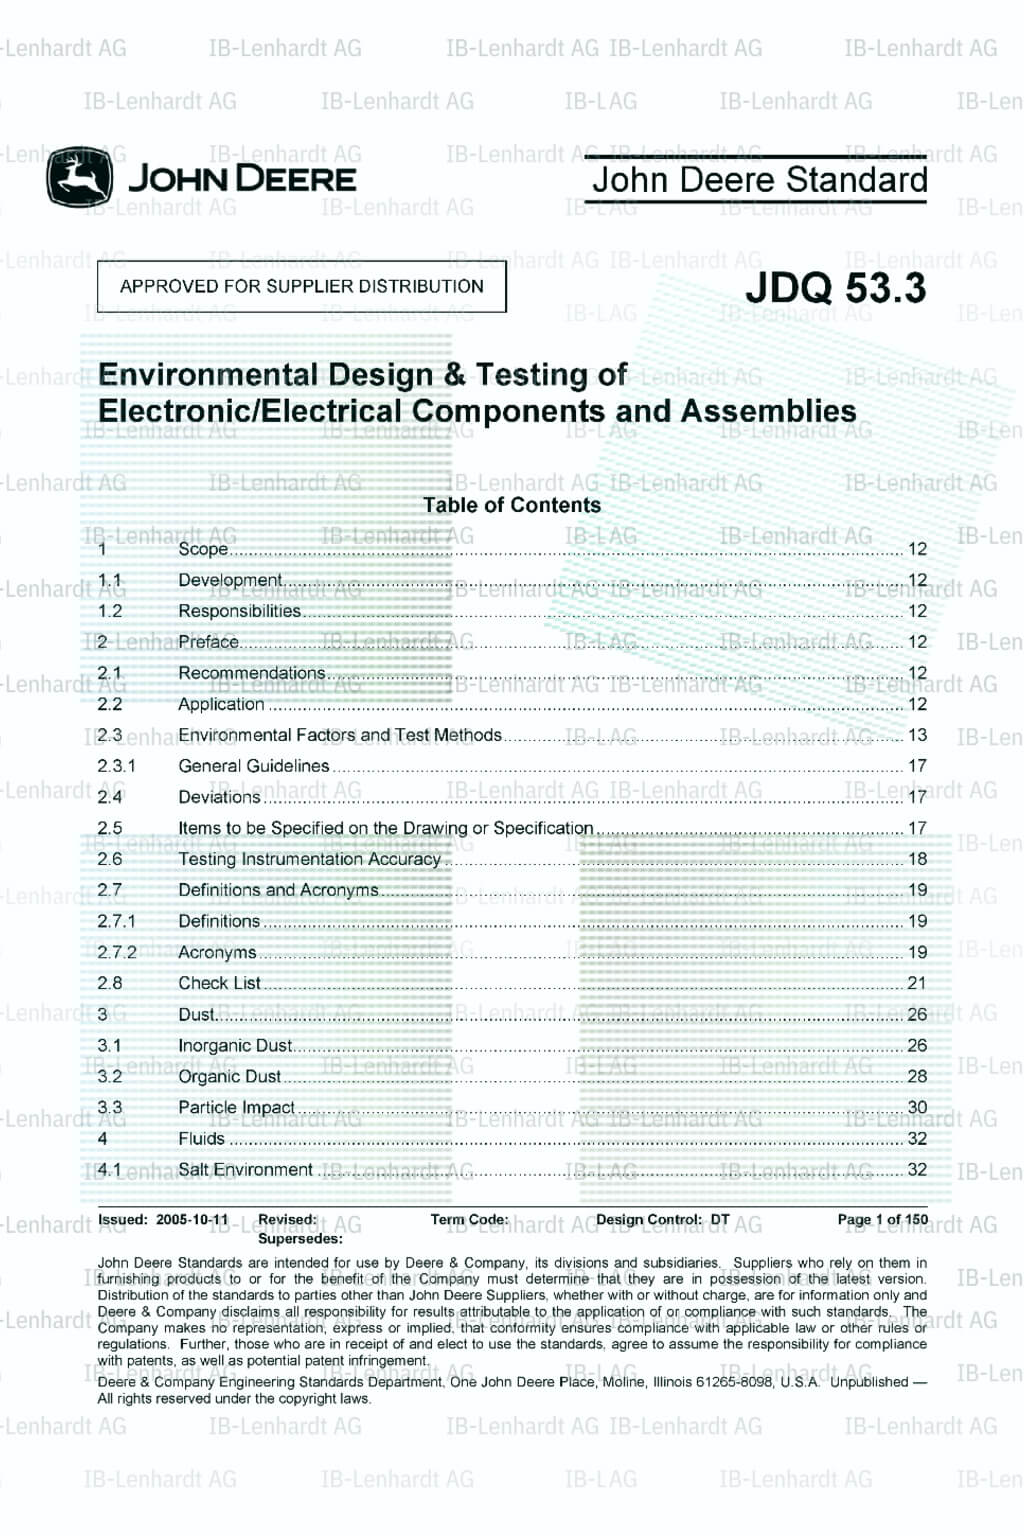 John Deere Standard JDQ 53.3